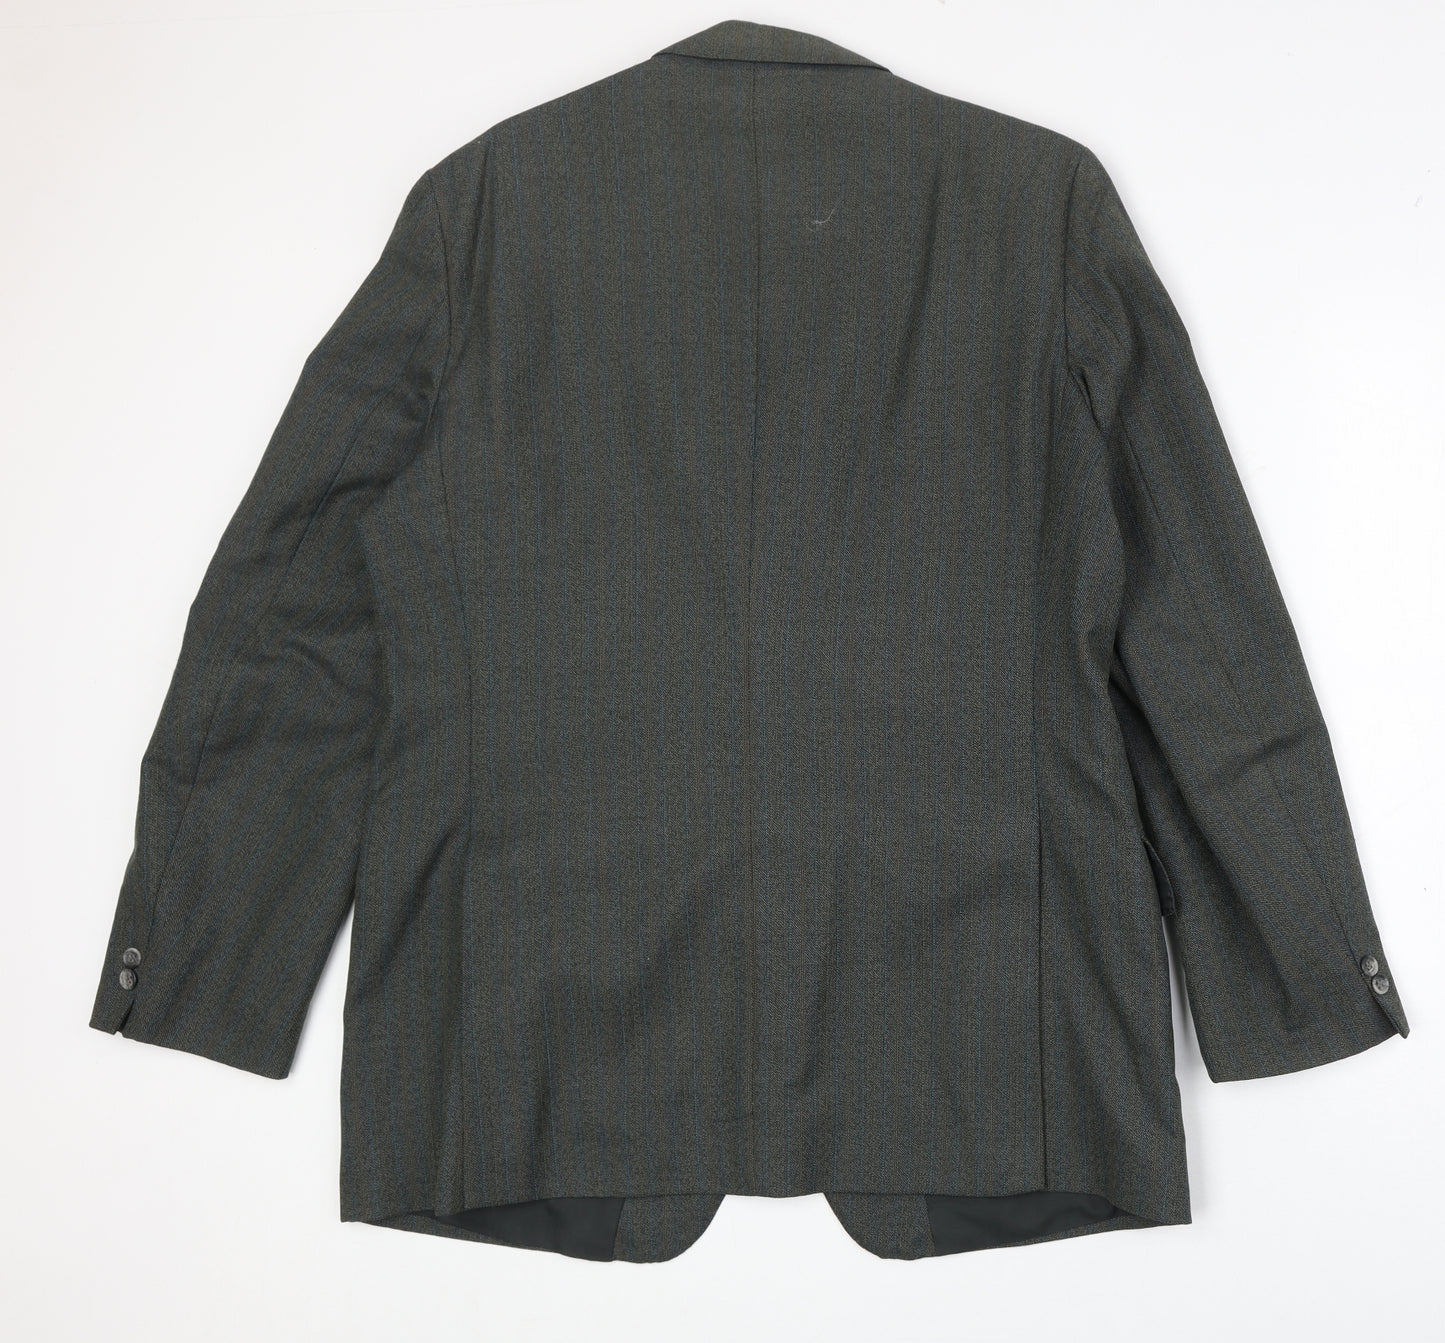 Czarina Mens Grey Polyester Jacket Suit Jacket Size 44 Regular